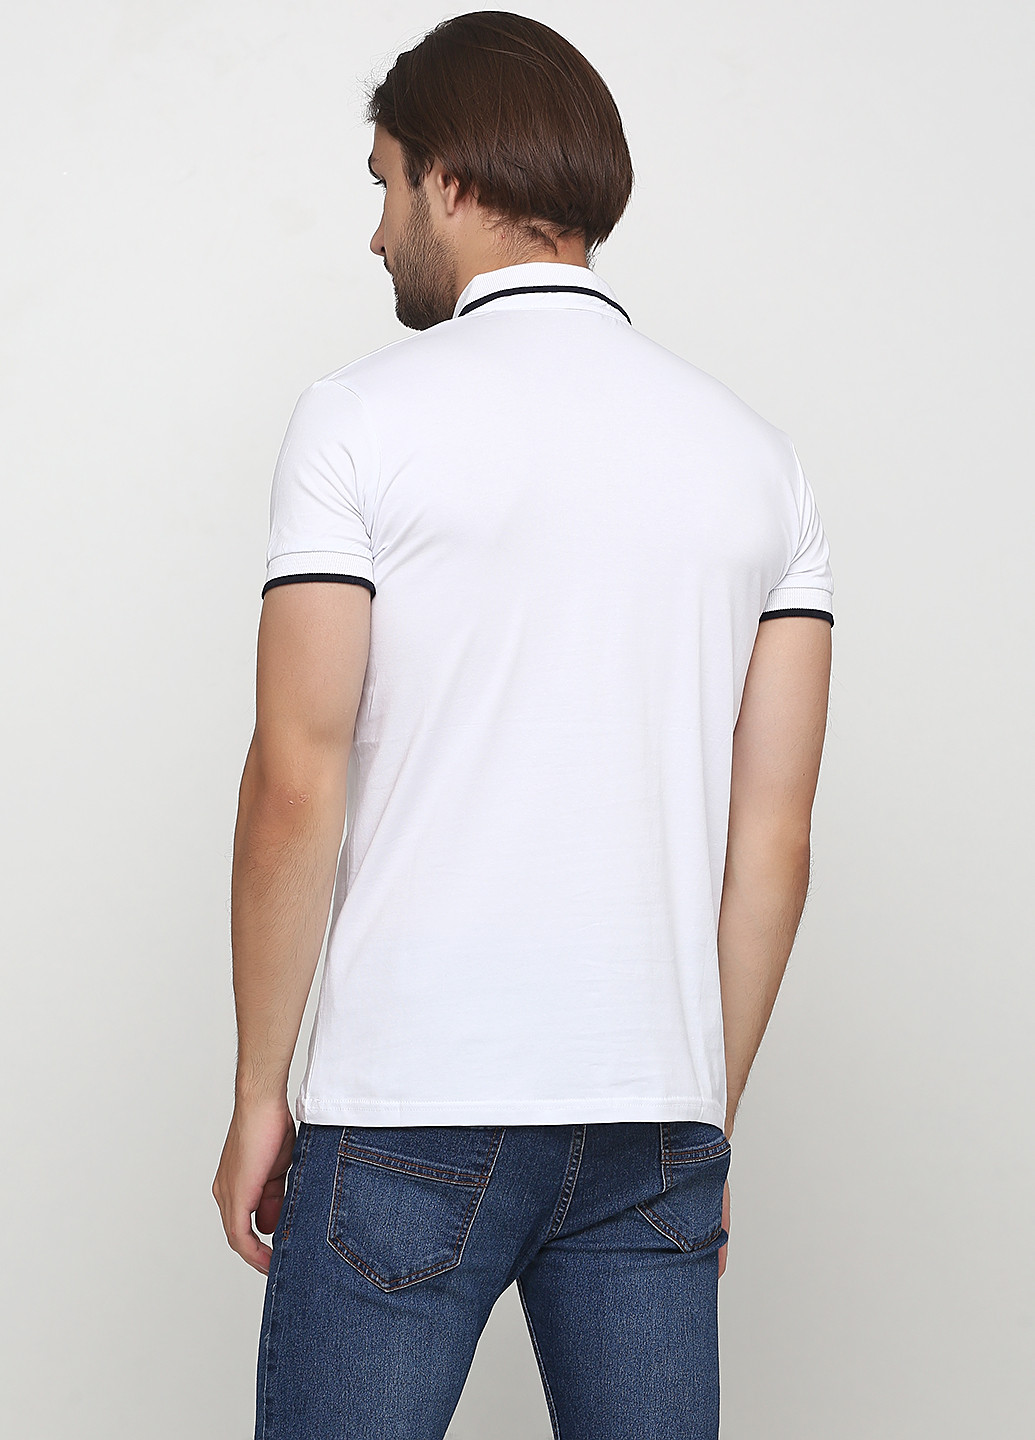 Белая футболка-поло для мужчин Golf с надписью